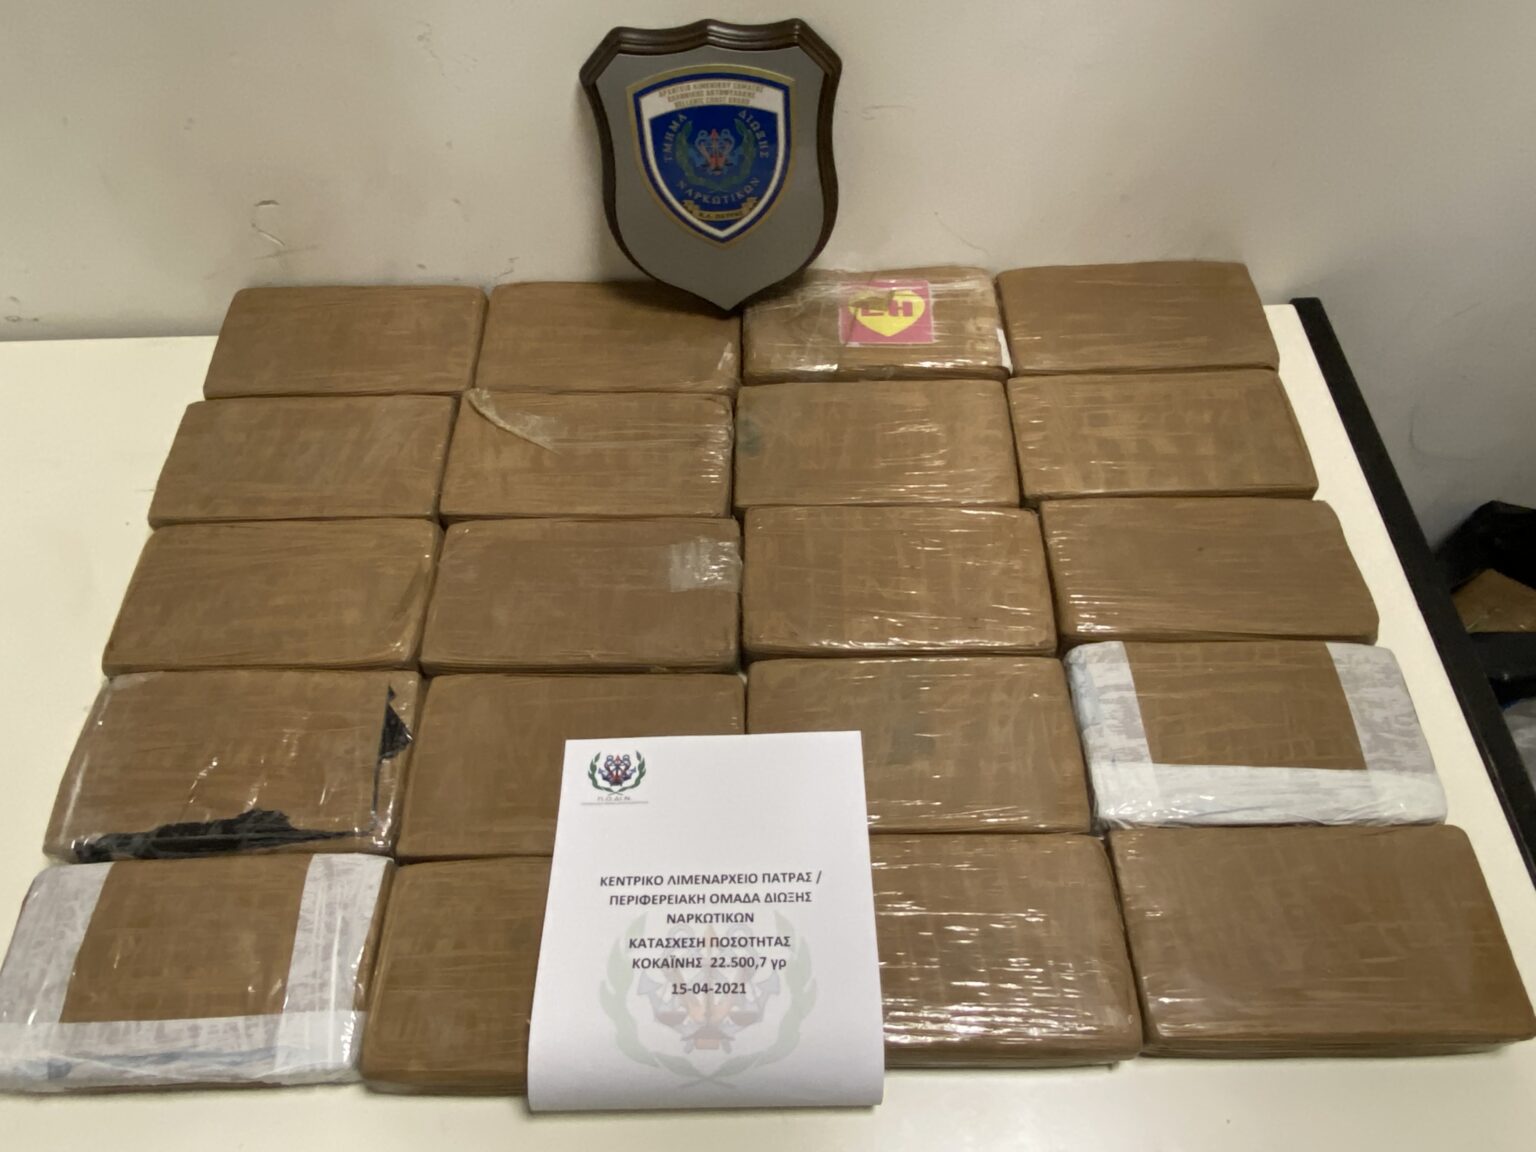 Περισσότερα από 22 κιλά κοκαΐνης βρέθηκαν μέσα σε φορτηγό στο λιμάνι της Πάτρας